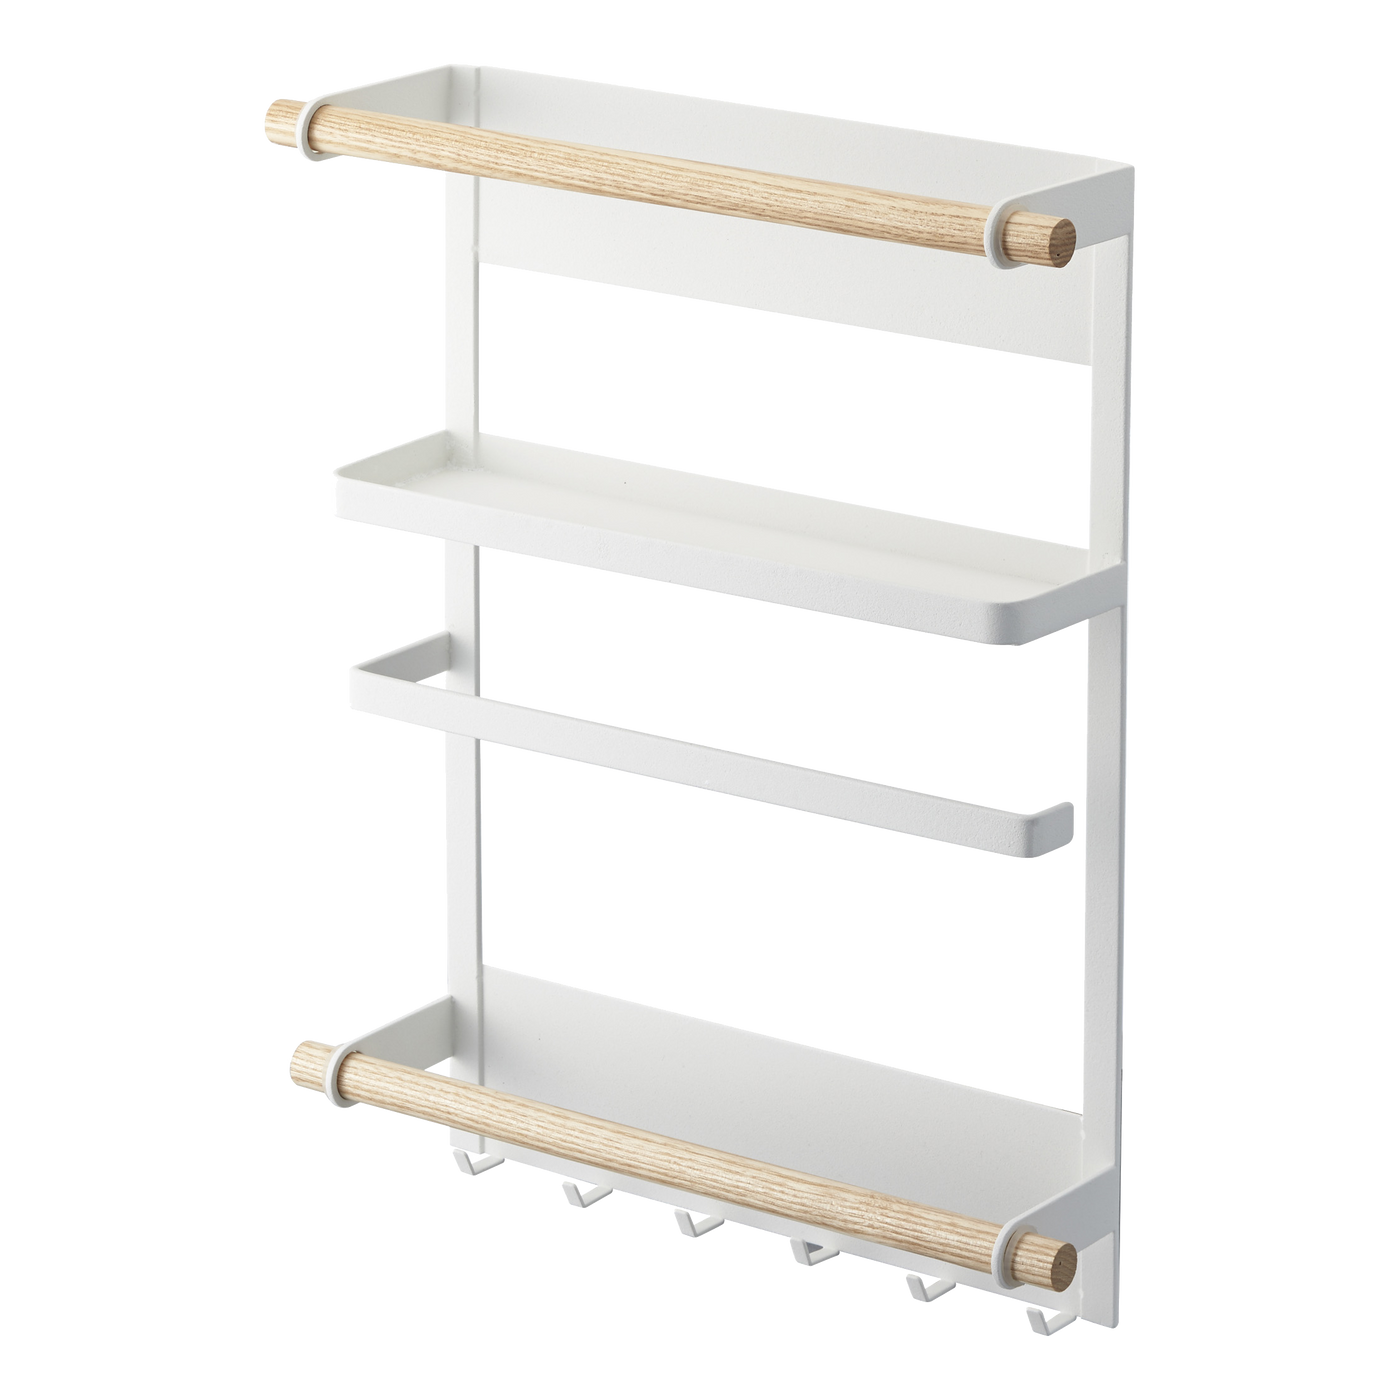 White Yamazaki magnetic organizing rack with wooden rod